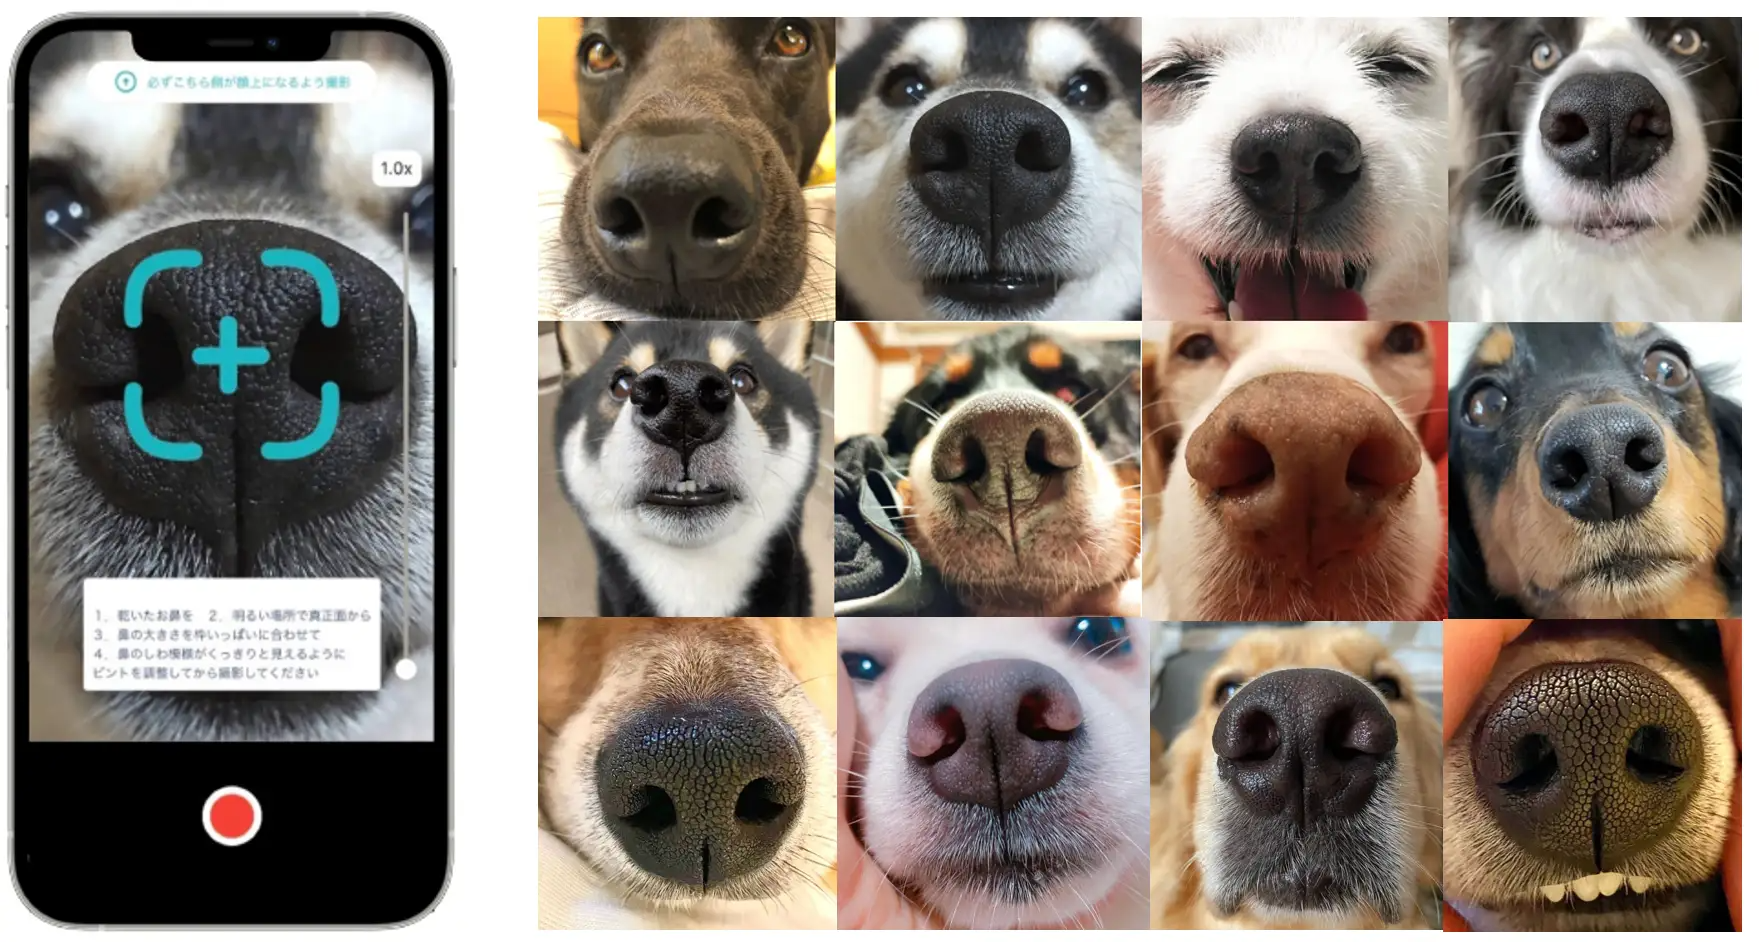 日本初、犬の「鼻紋」をAIで解析し個体識別するアプリが登場─迷子犬を特定し飼い主に連絡可能に